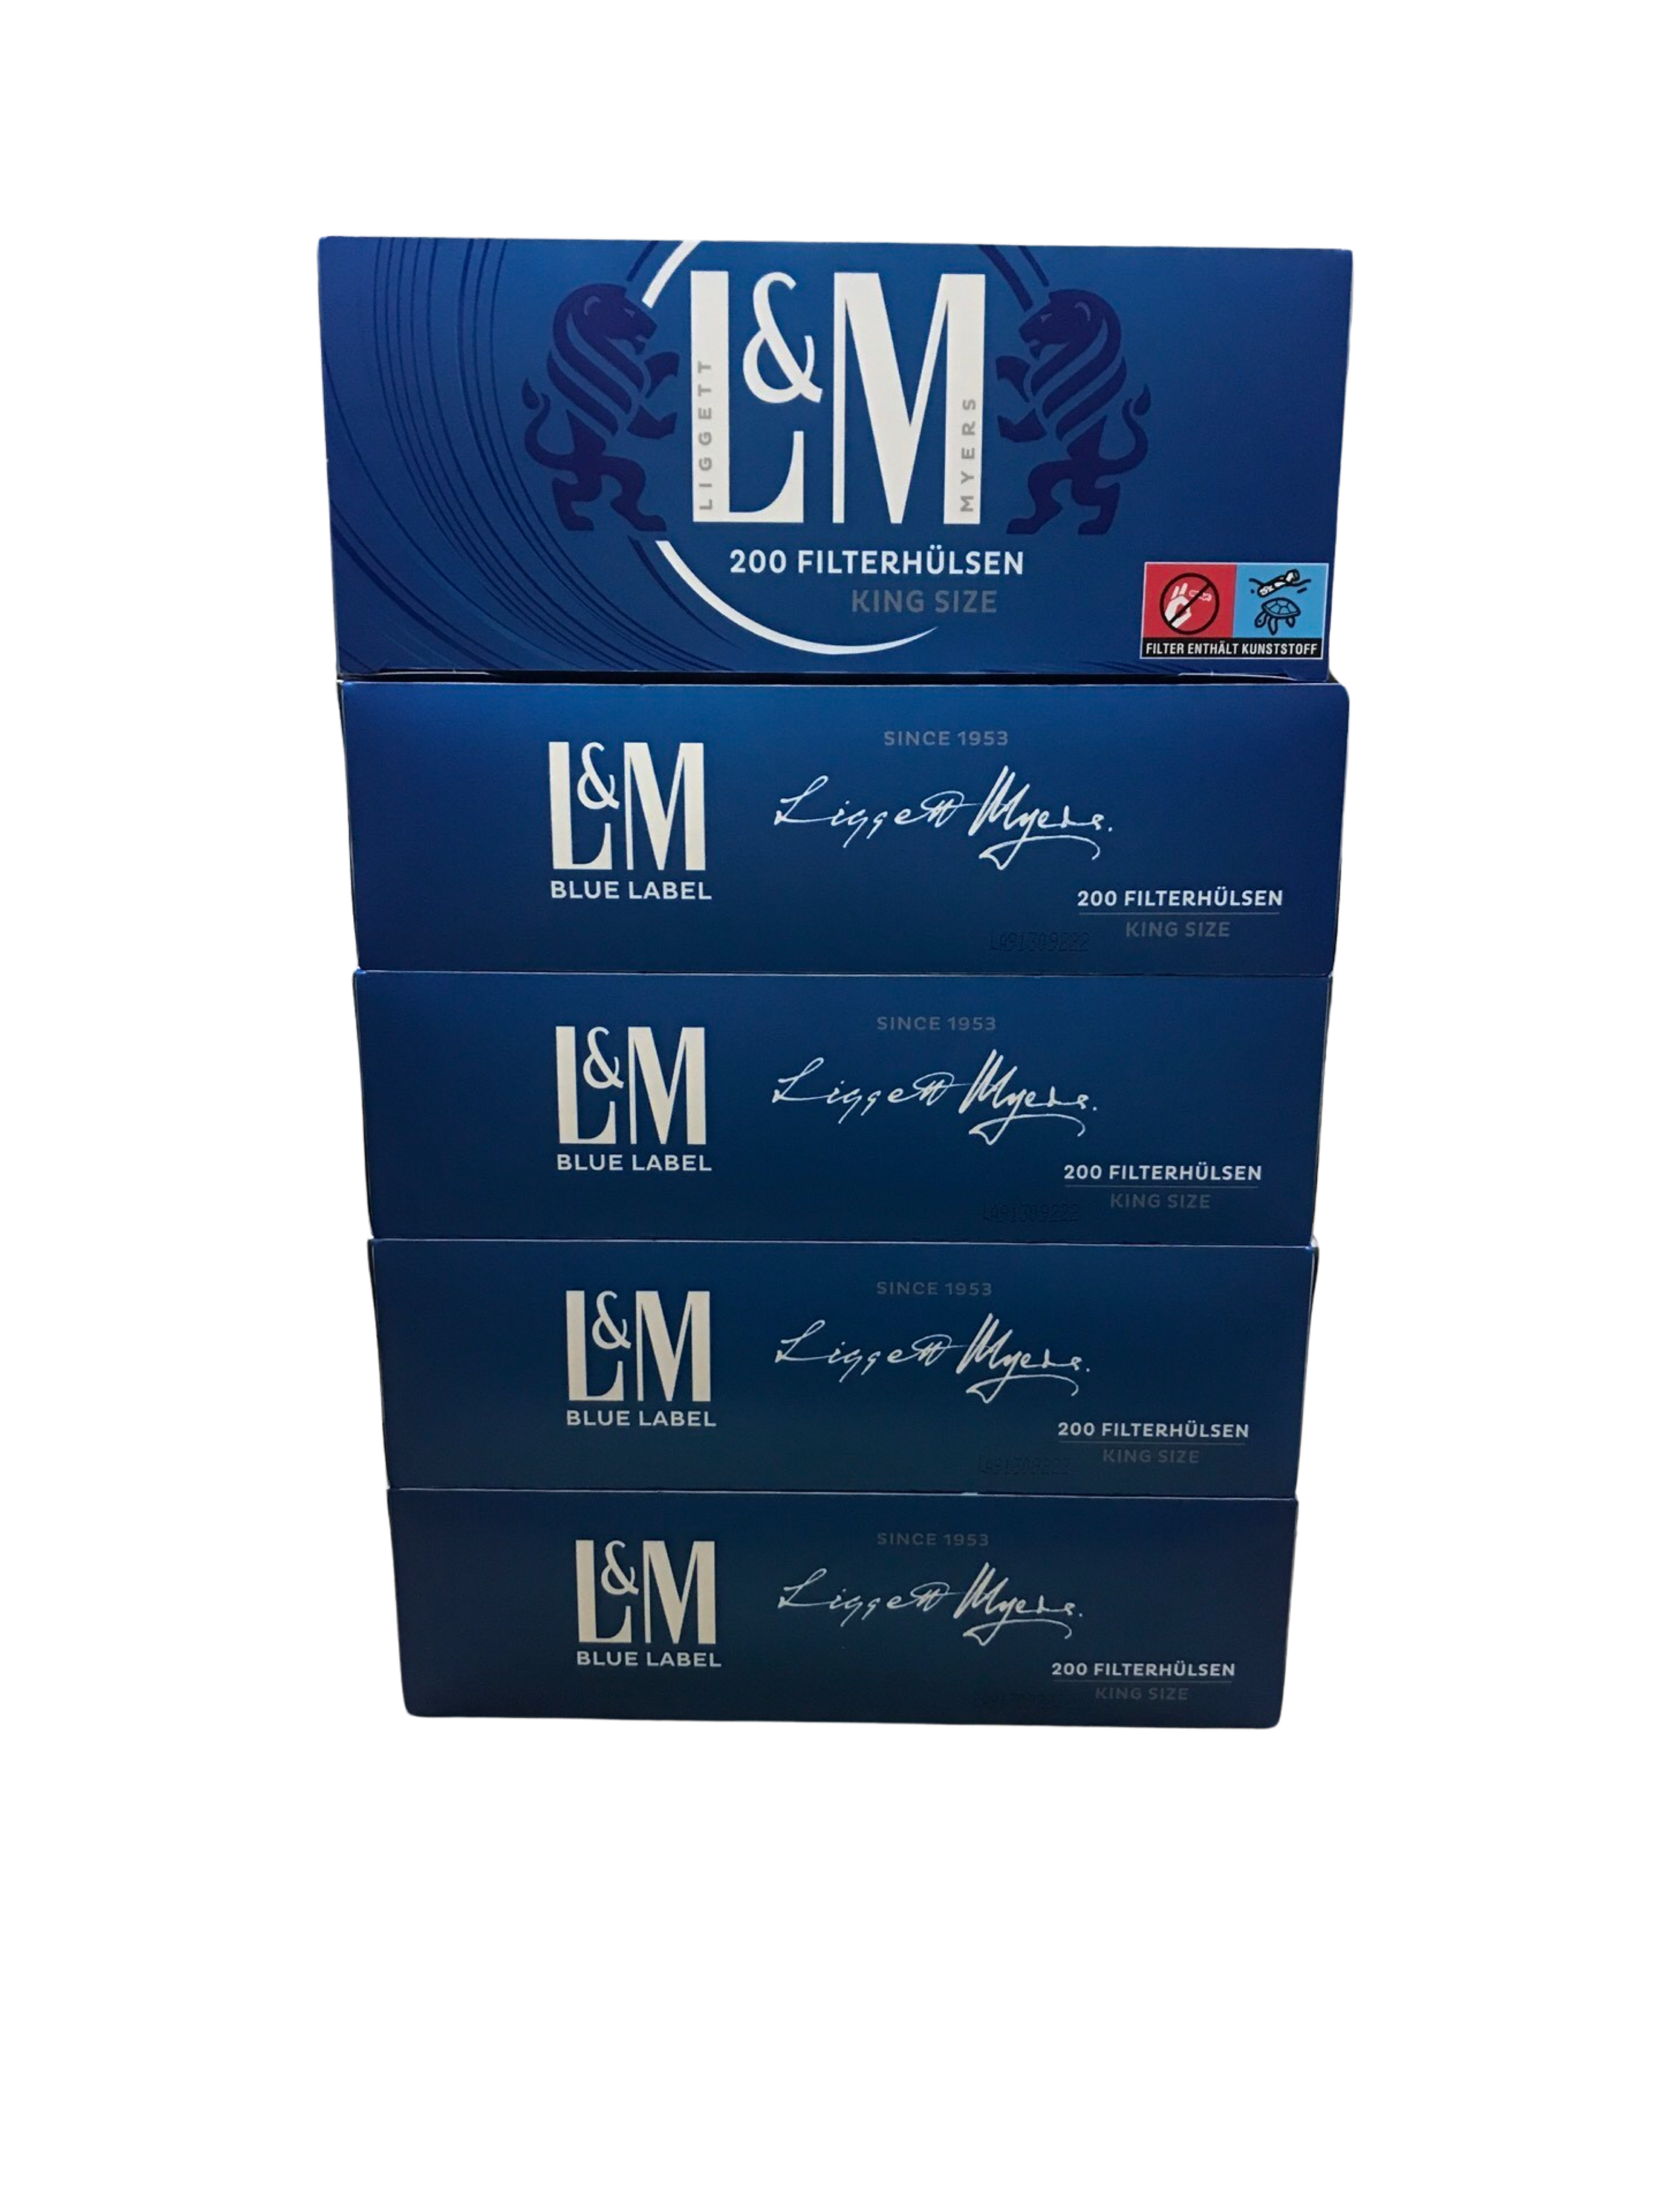 L&M Filterhülsen Blue Label 1.000 Stück